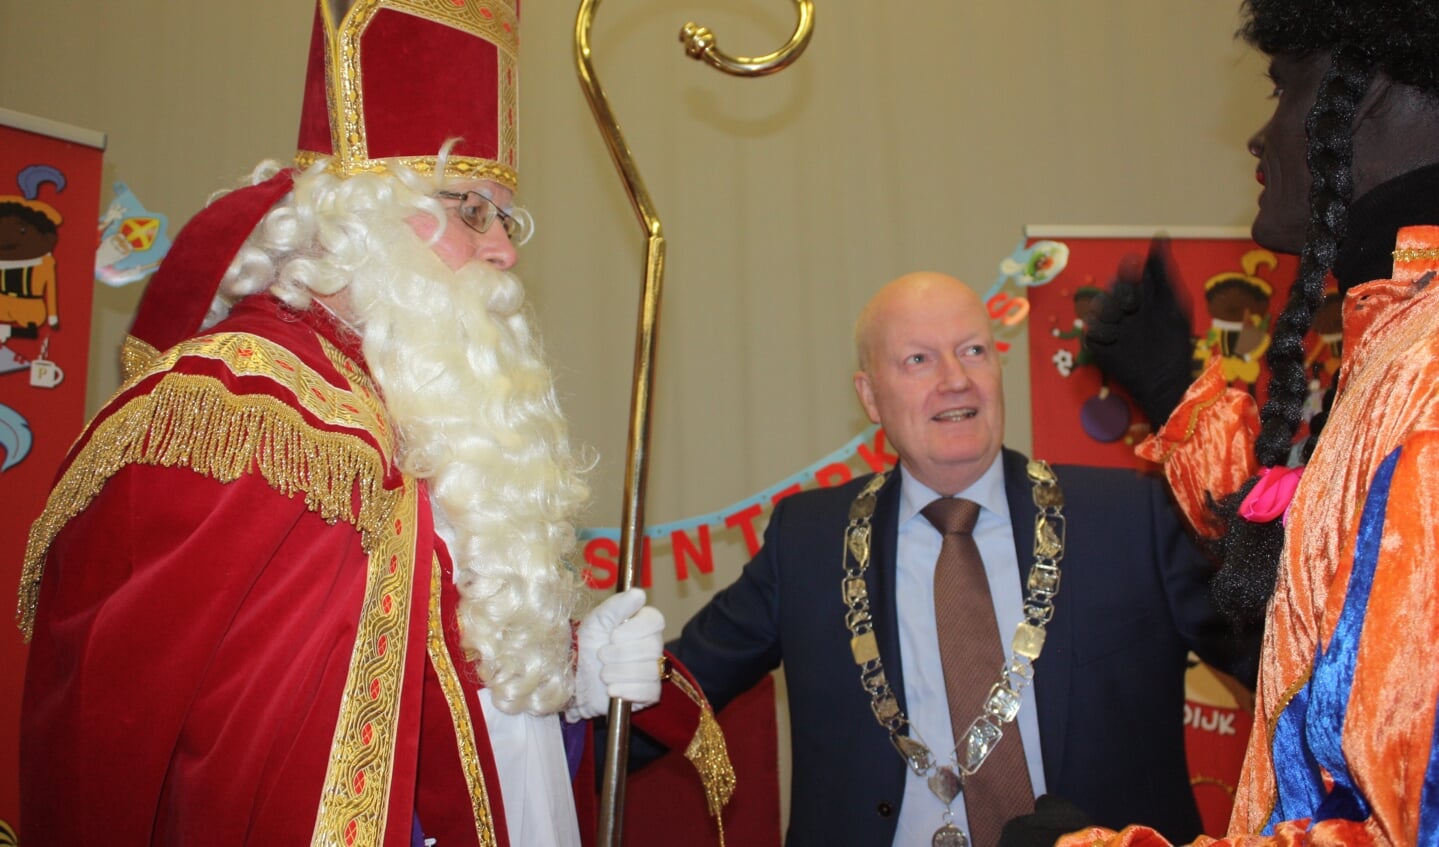 Voor burgemeester Ruud van Bennekom was de Pietenjacht vorig jaar een goede kennismaking met Odijk